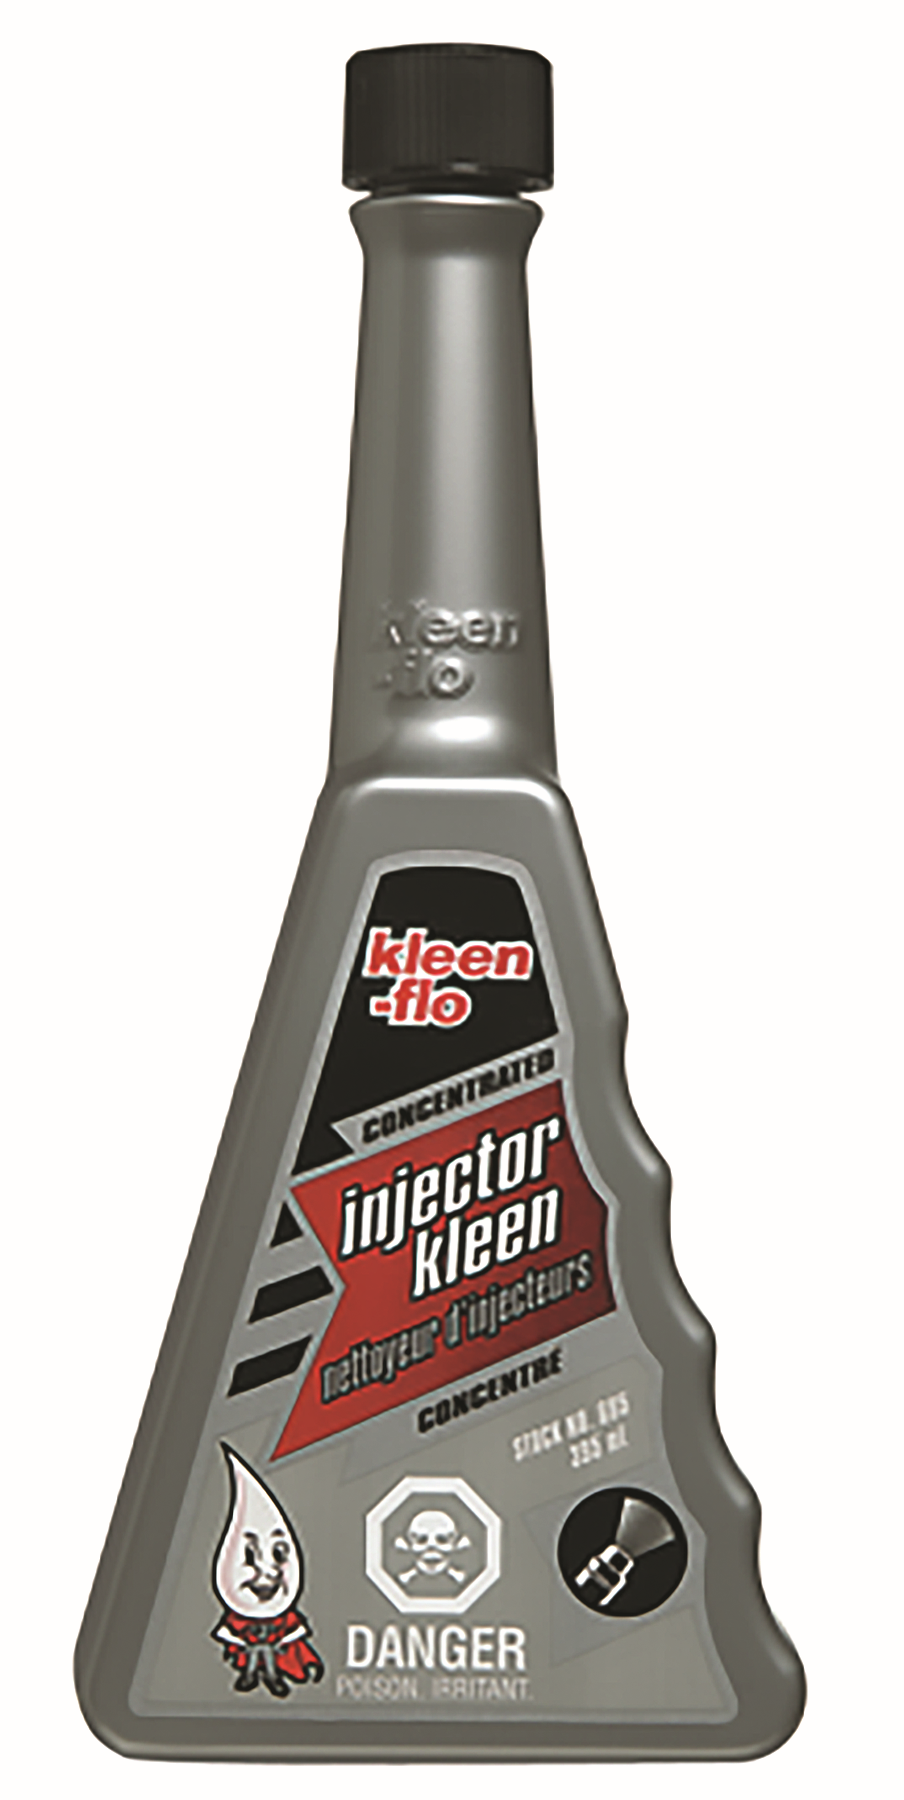 Kleen-Flo Injector Kleen, 395ML — Partsource